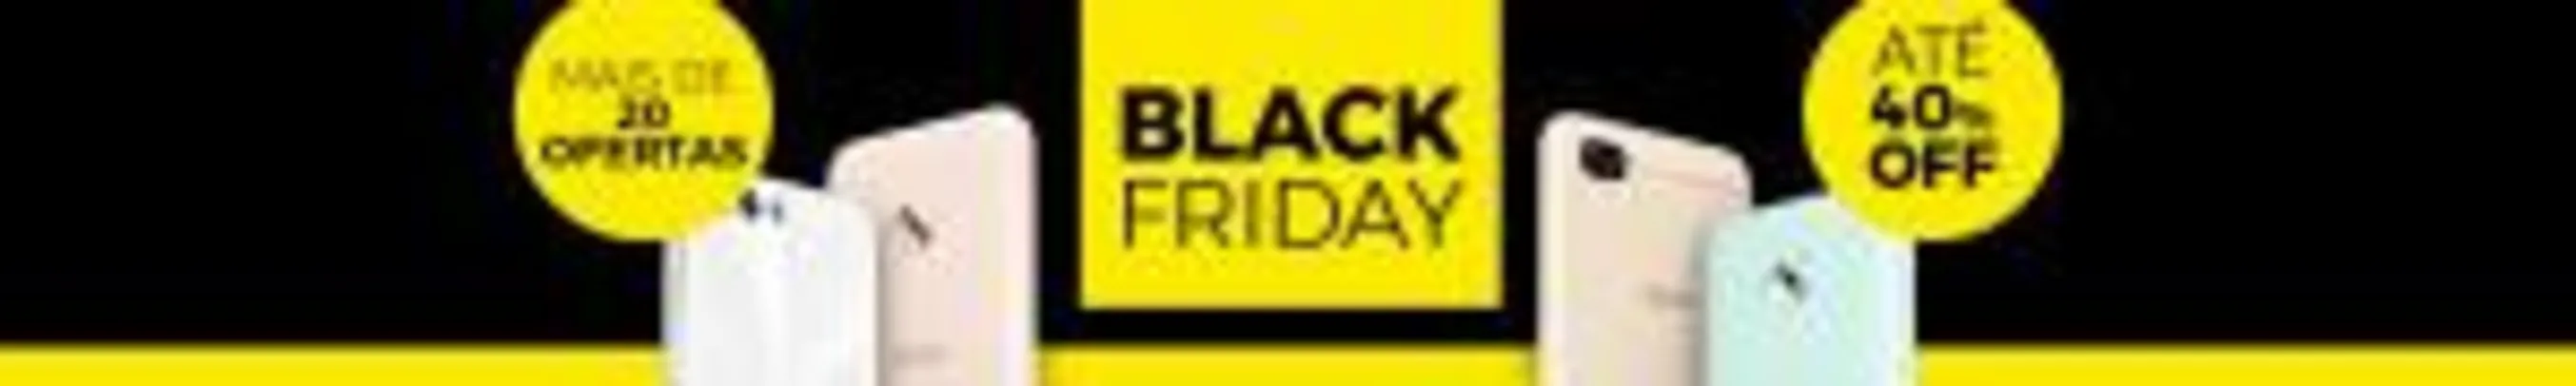 Ofertas de Black Friday da Asus até 40% off